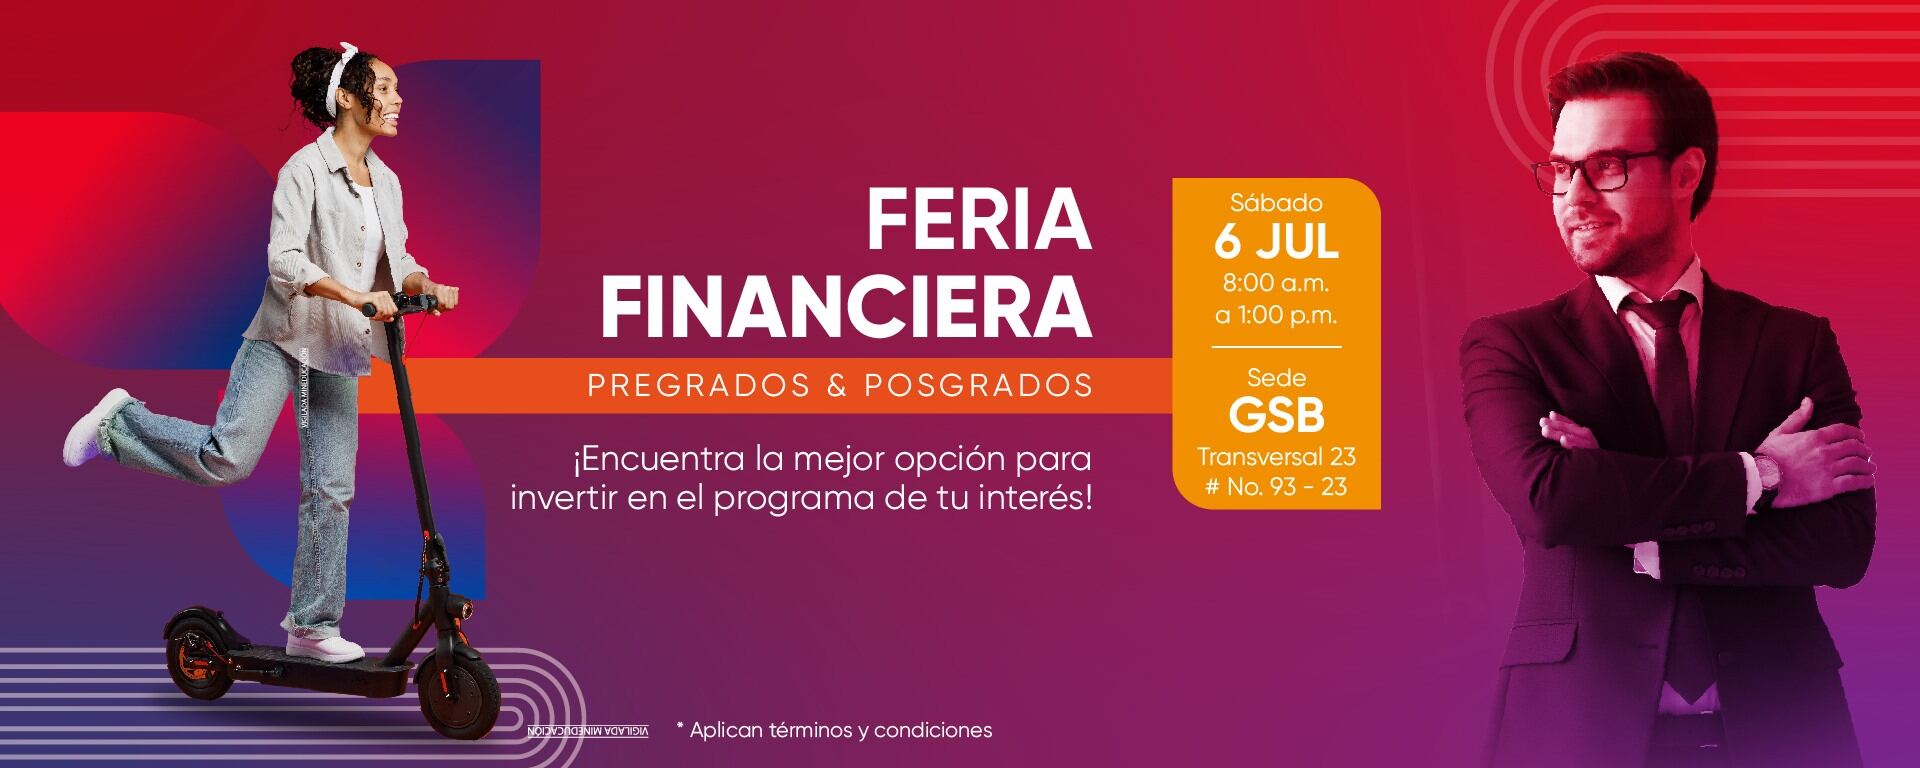 Feria Fiannciera Pregrados y Posgrados. Sábado 6 de julio, 8:00am a 1:00pm |Sede GSB | Transversal 23 #93-23